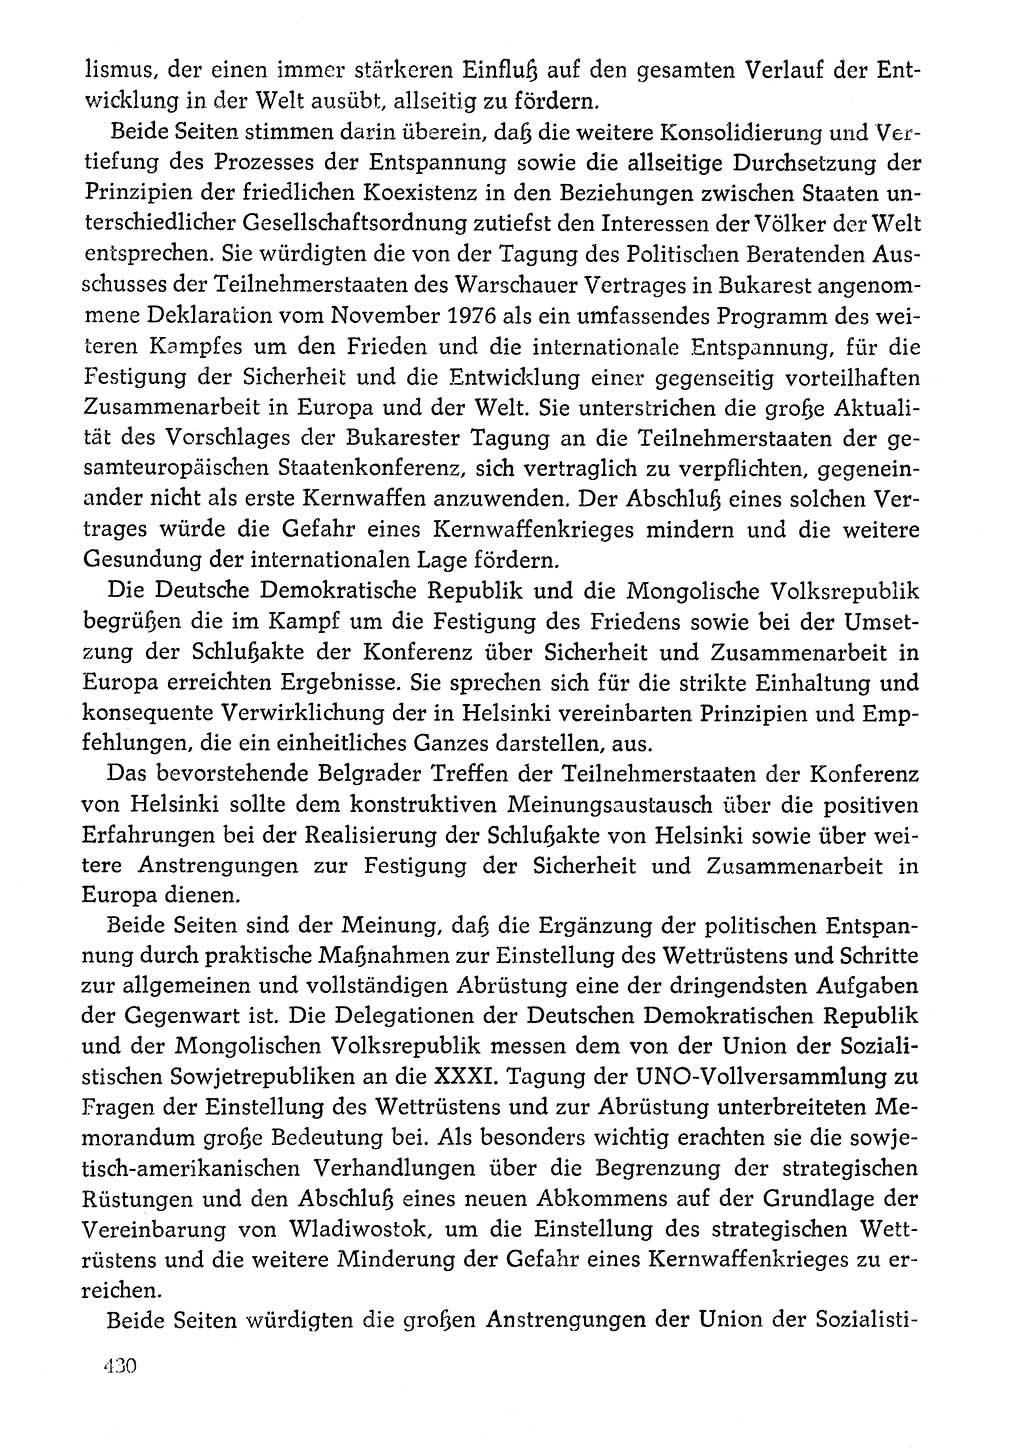 Dokumente der Sozialistischen Einheitspartei Deutschlands (SED) [Deutsche Demokratische Republik (DDR)] 1976-1977, Seite 430 (Dok. SED DDR 1976-1977, S. 430)